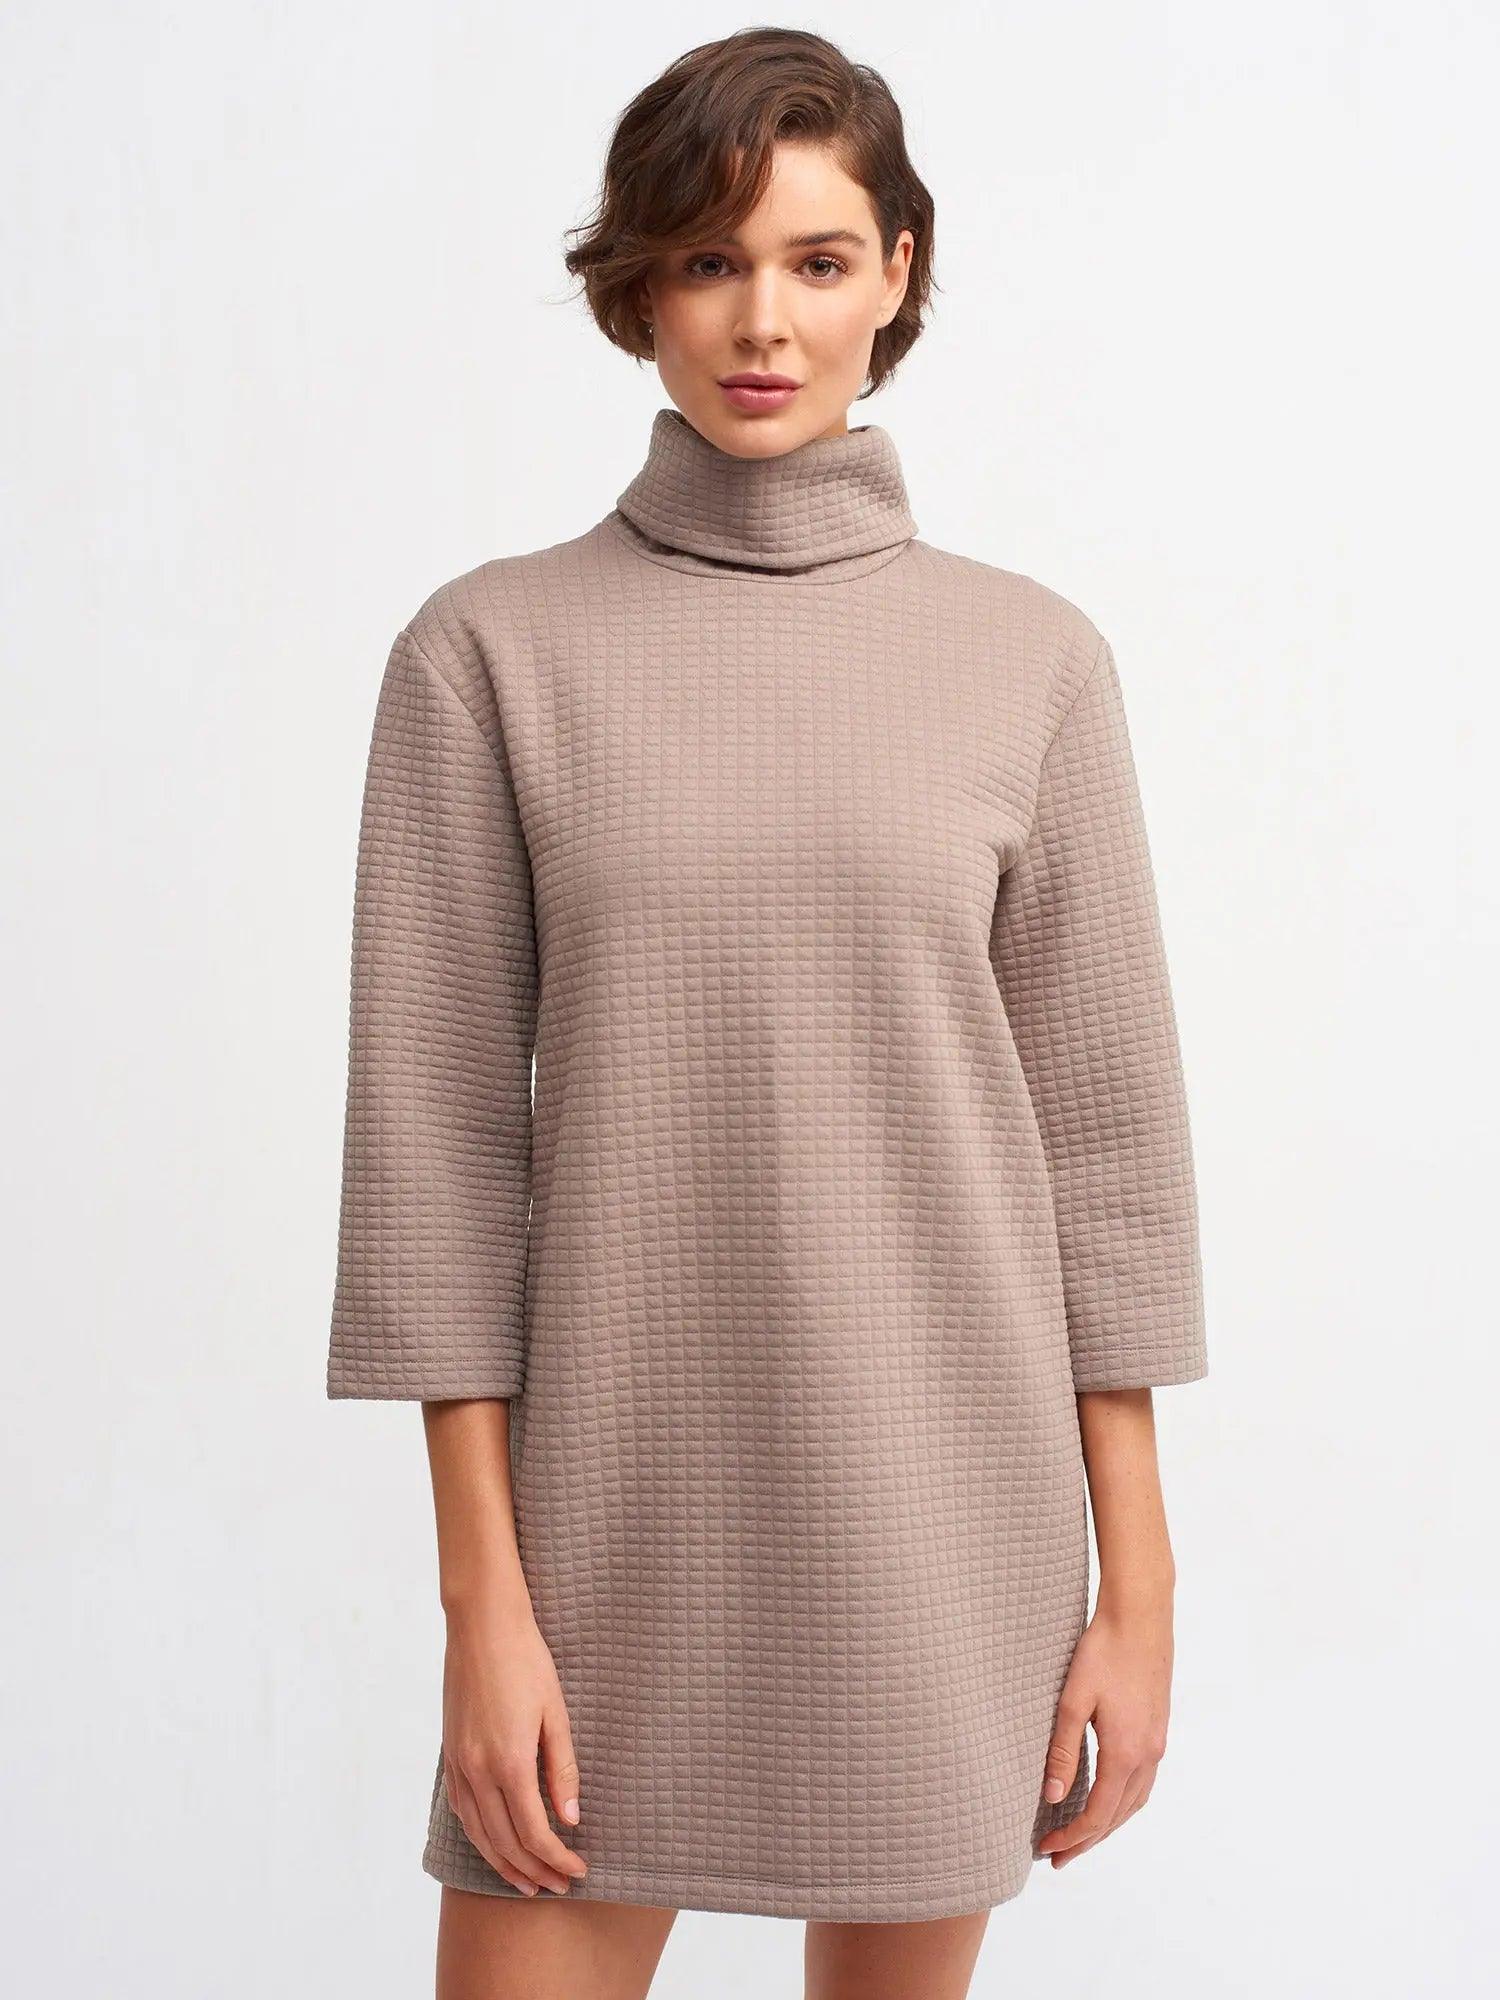 Turtleneck Knitwear Mini Dress Minsk / S / 4 ZEFASH